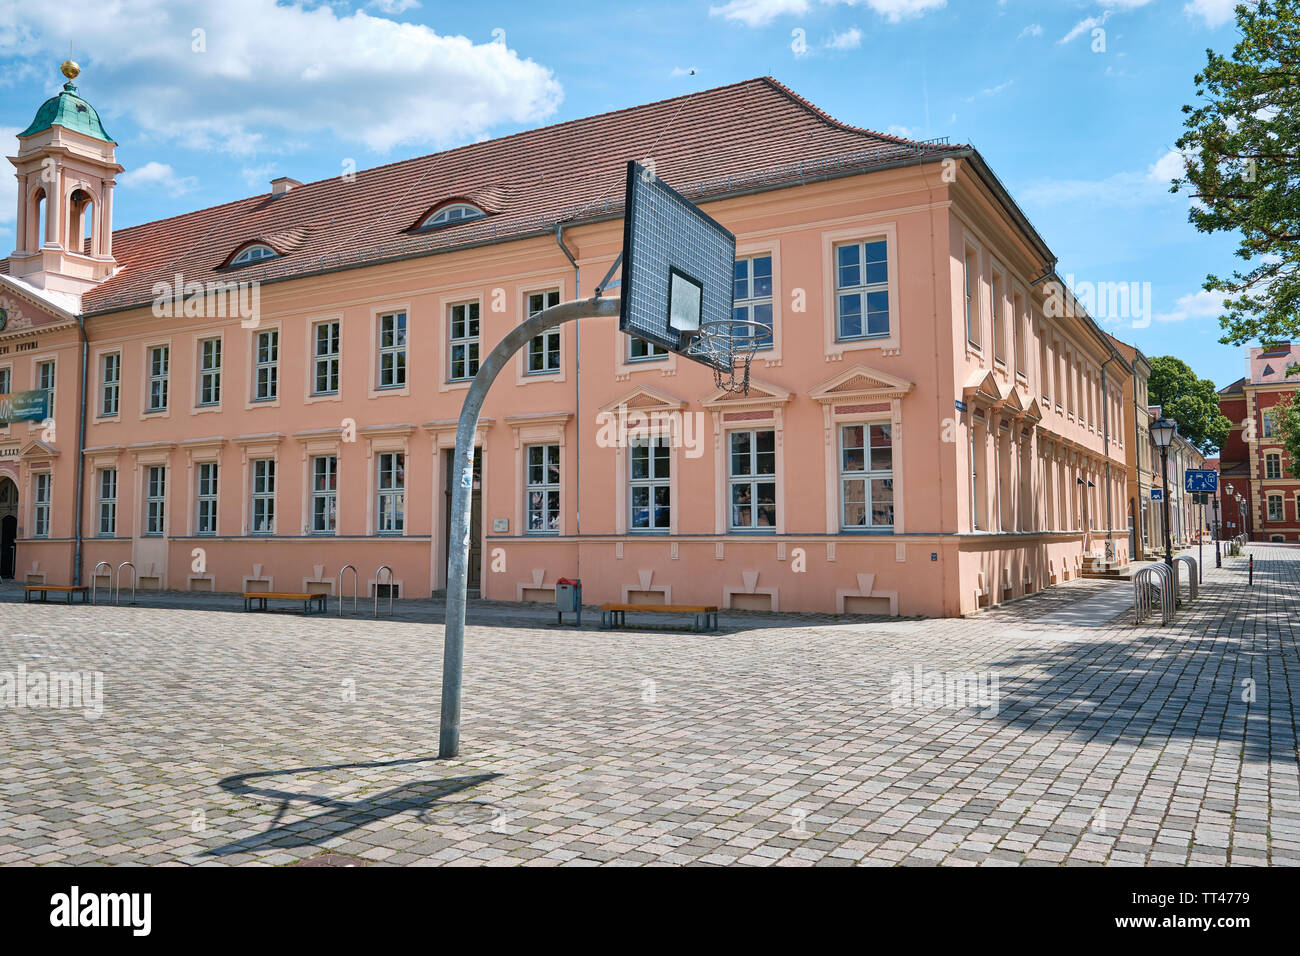 Basketballkorb vor klassizistische Schulhaus in Neuruppin, Deutschland Stockfoto